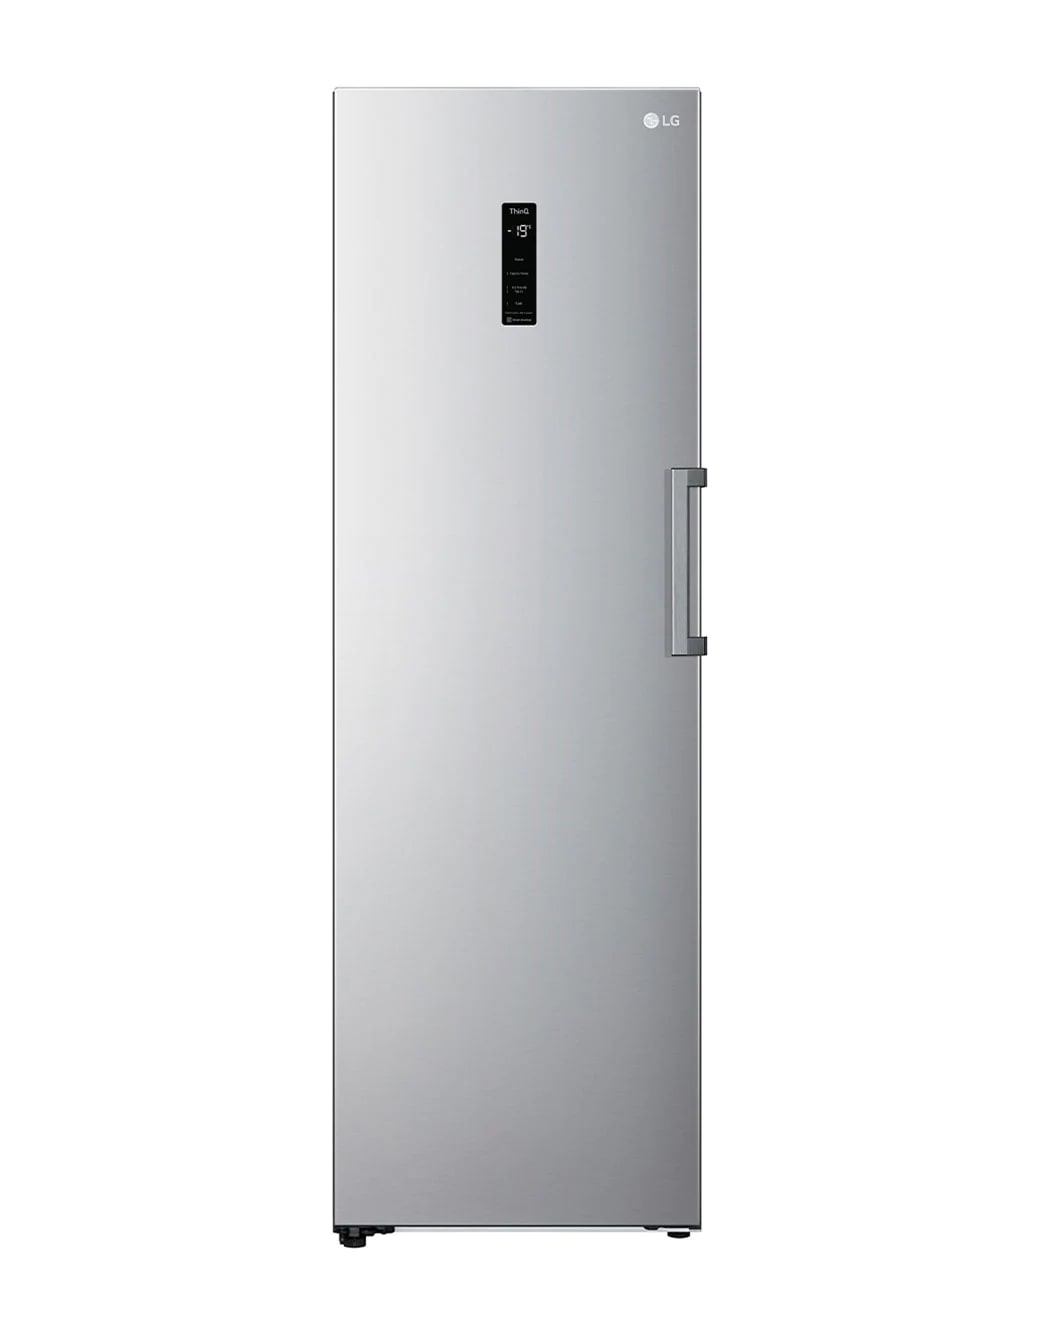 Réfrigérateur SMEG- réfrigérateur 1 porte SMEG rouille - Charnière